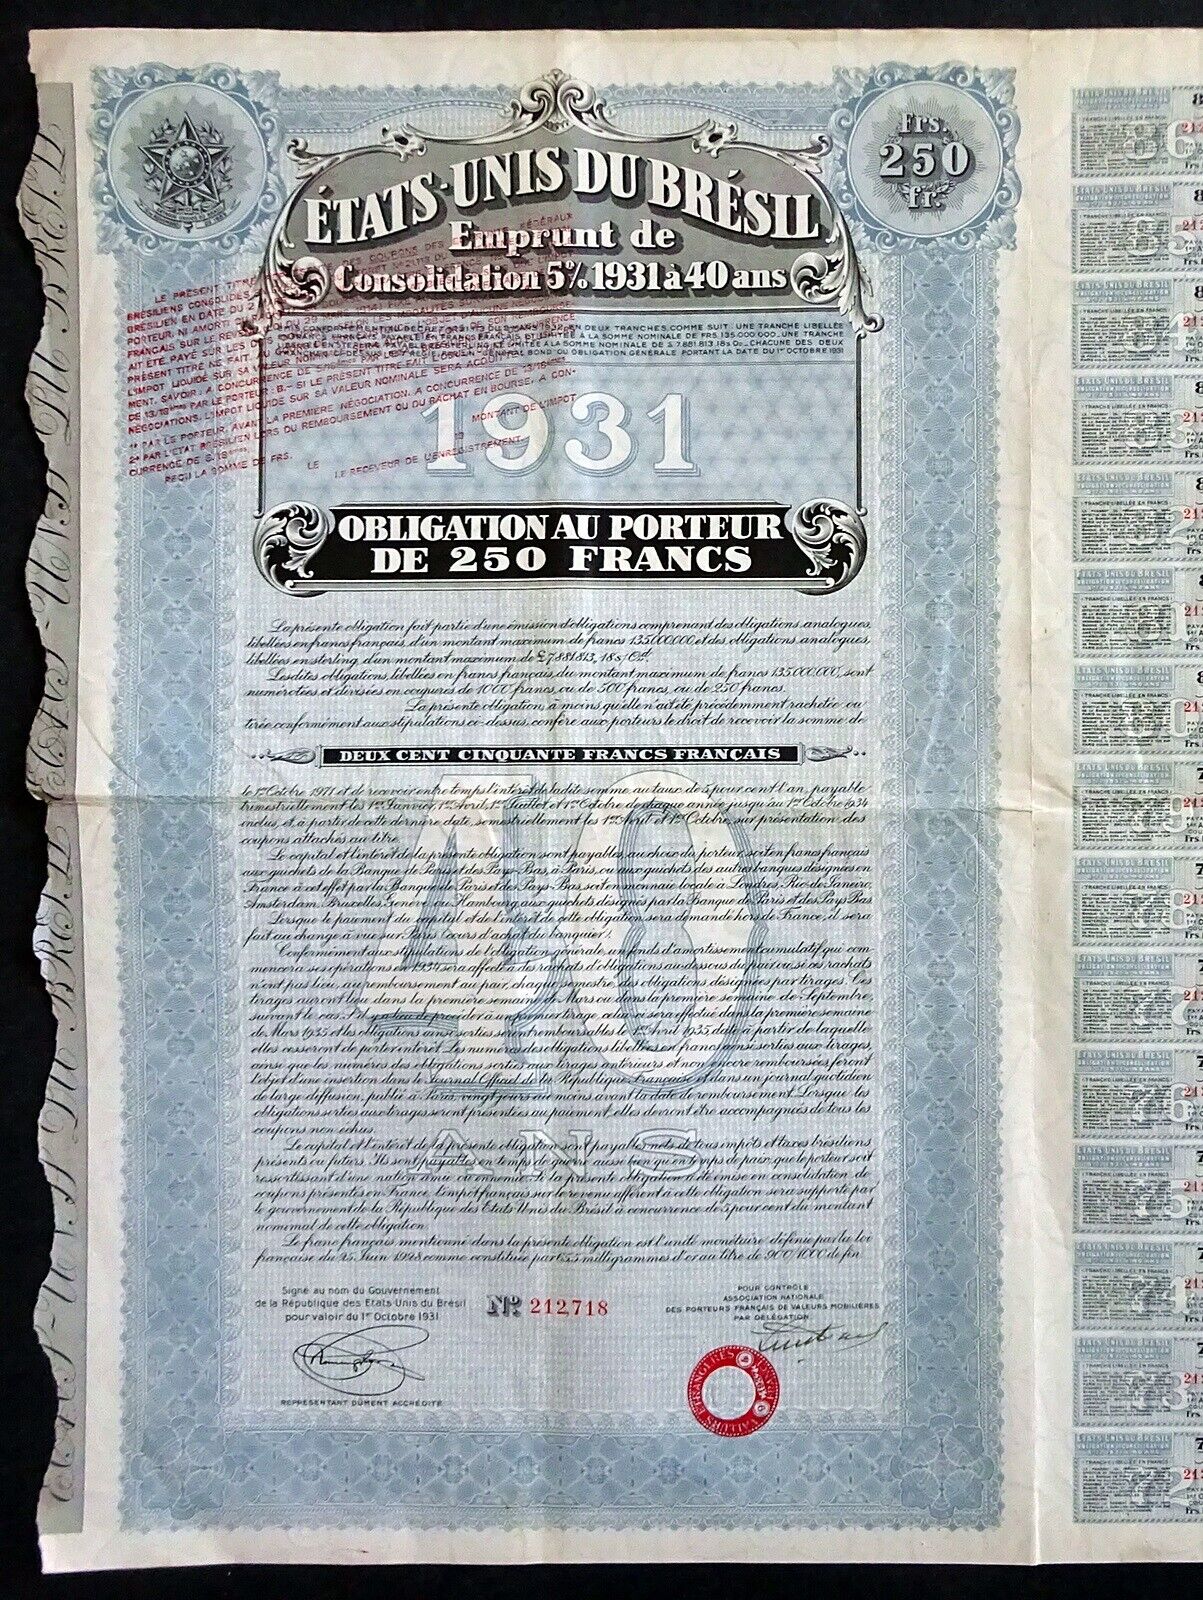 1931 United States Of Brazil: Etats-unis Du Bresil, Bearer Bond, 250 Francs